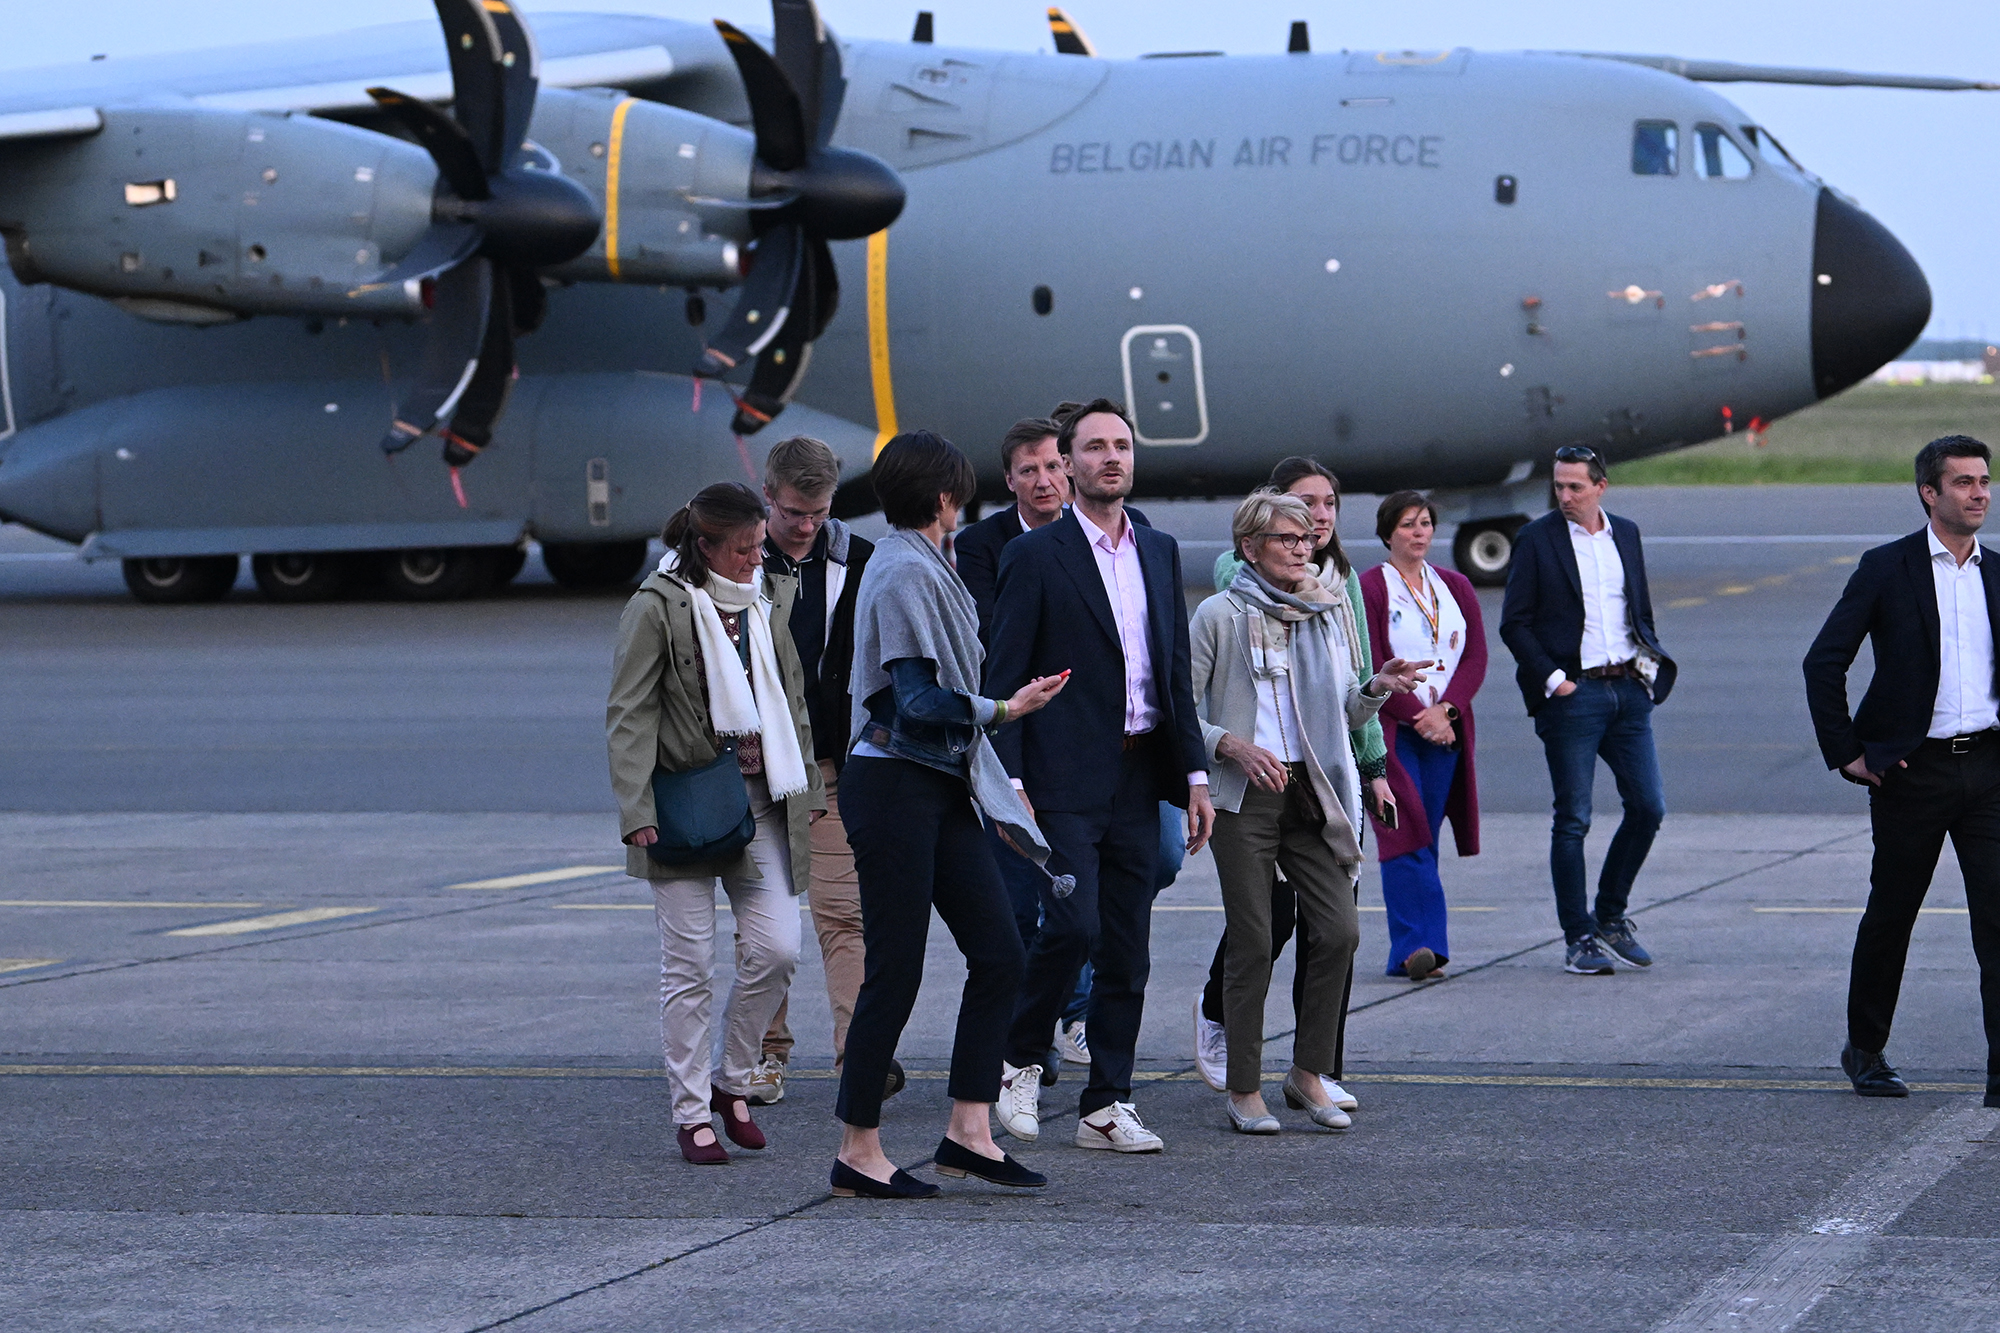 Olivier Vandecasteele (Mitte) nach der Landung im Melsbroek mit Familie und Freunden (Bild: Didier Lebrun/Belga)